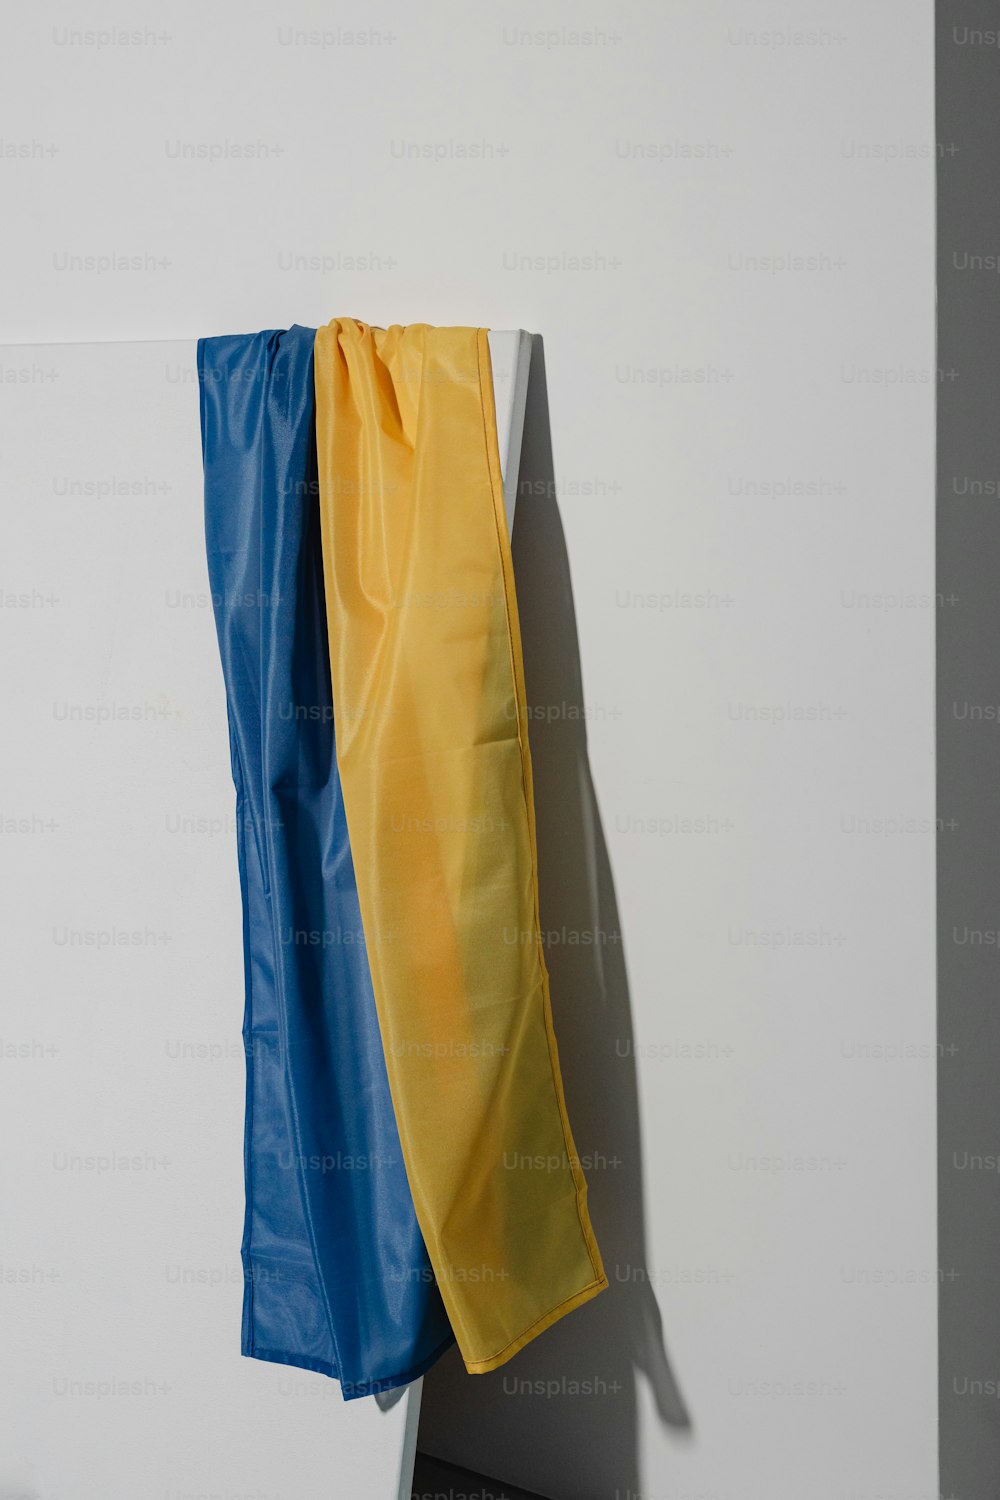 un morceau de tissu jaune et bleu accroché au mur